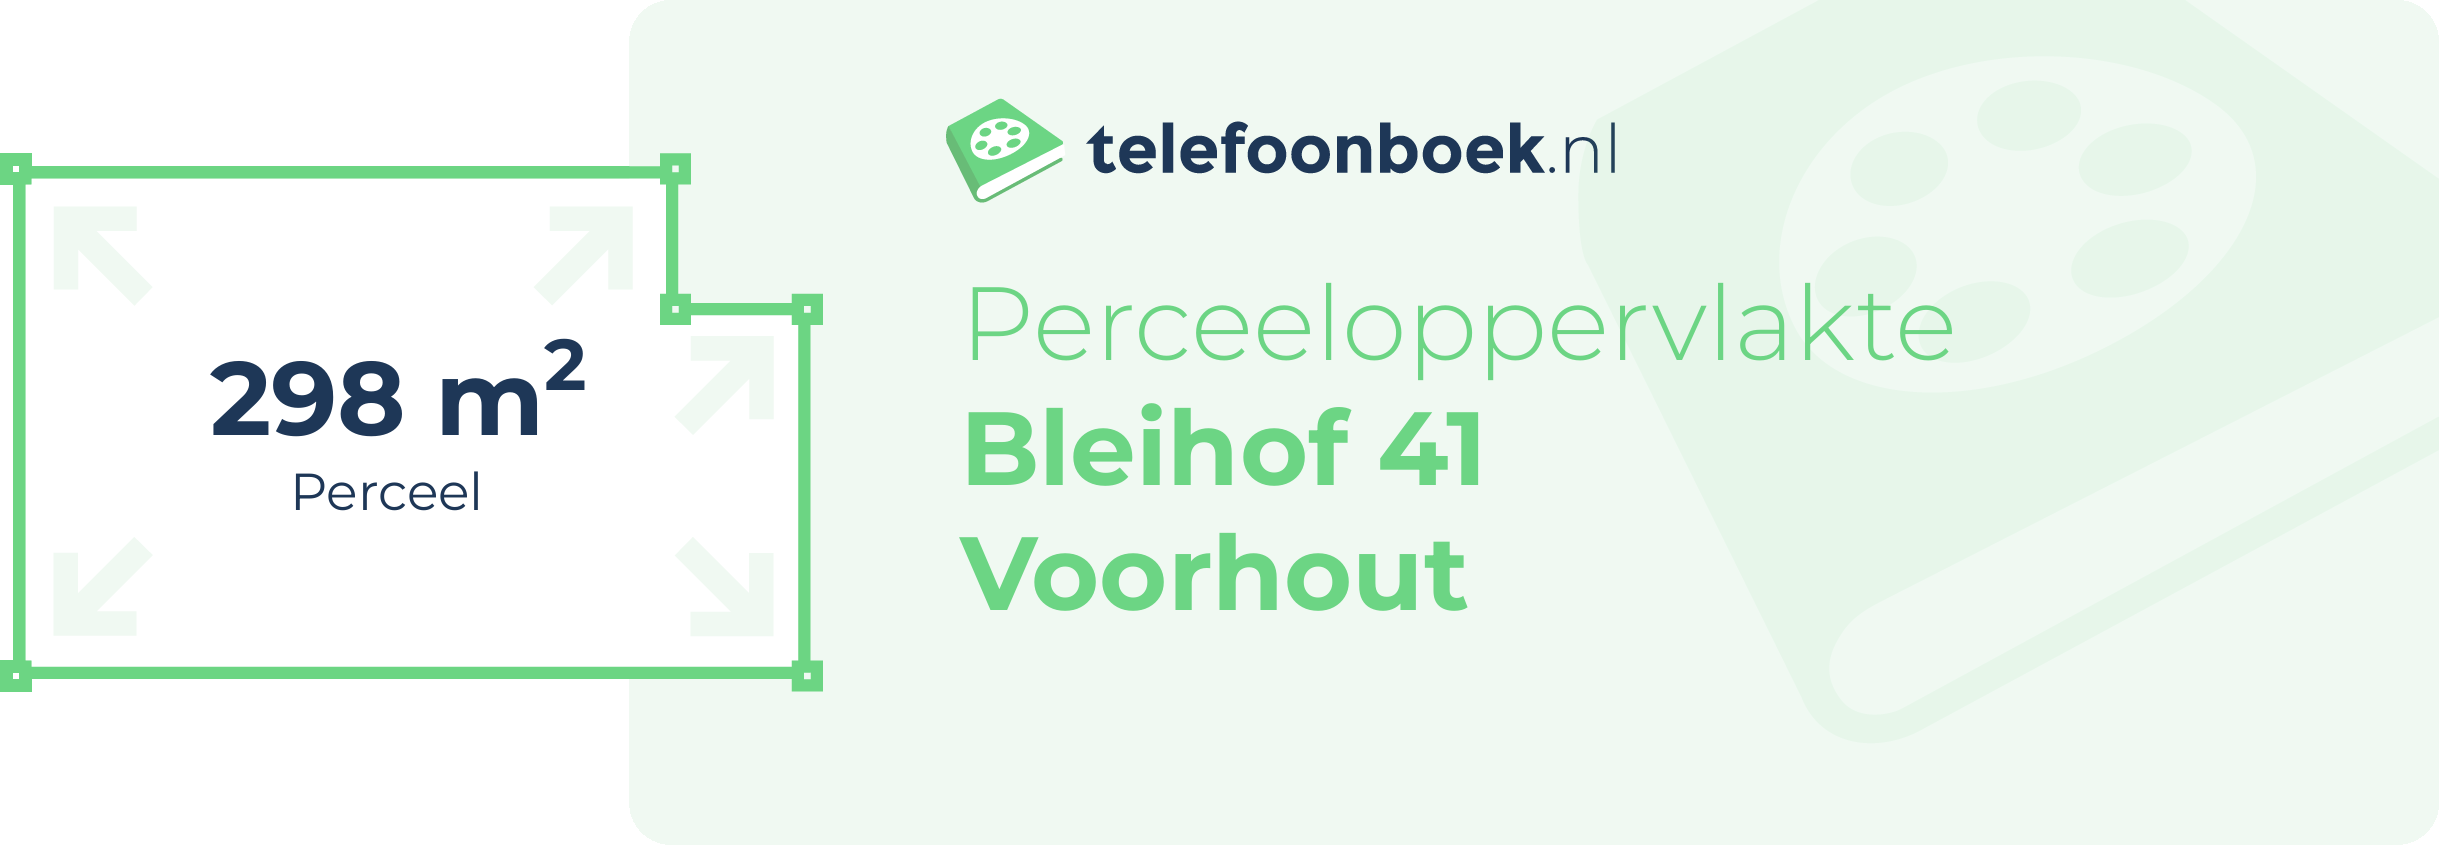 Perceeloppervlakte Bleihof 41 Voorhout